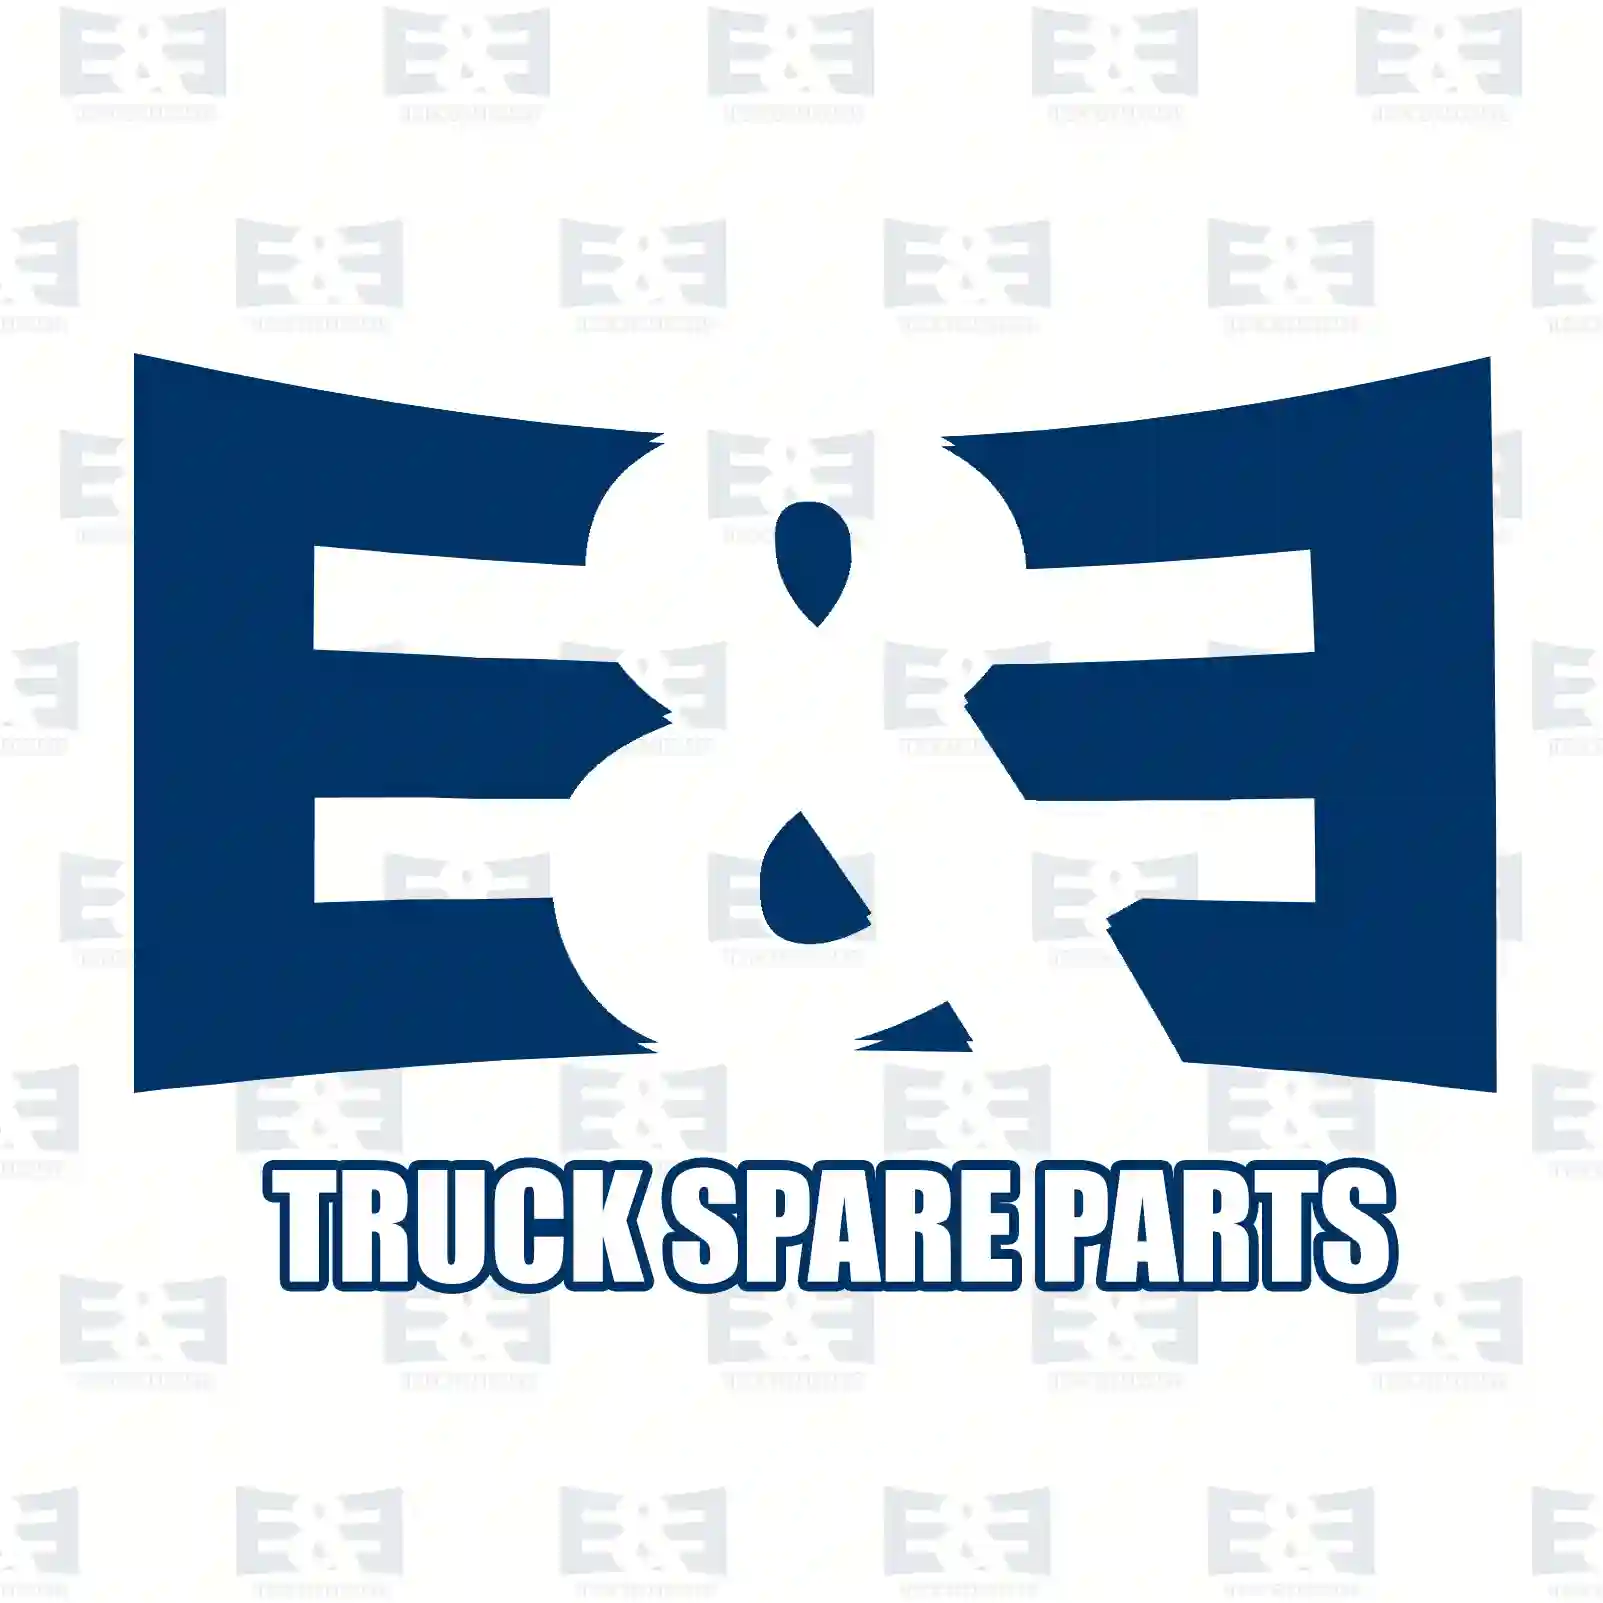 Synchronizer body, 2E2279391, 1643381, 81324250157, 5001864640 ||  2E2279391 E&E Truck Spare Parts | Truck Spare Parts, Auotomotive Spare Parts Synchronizer body, 2E2279391, 1643381, 81324250157, 5001864640 ||  2E2279391 E&E Truck Spare Parts | Truck Spare Parts, Auotomotive Spare Parts